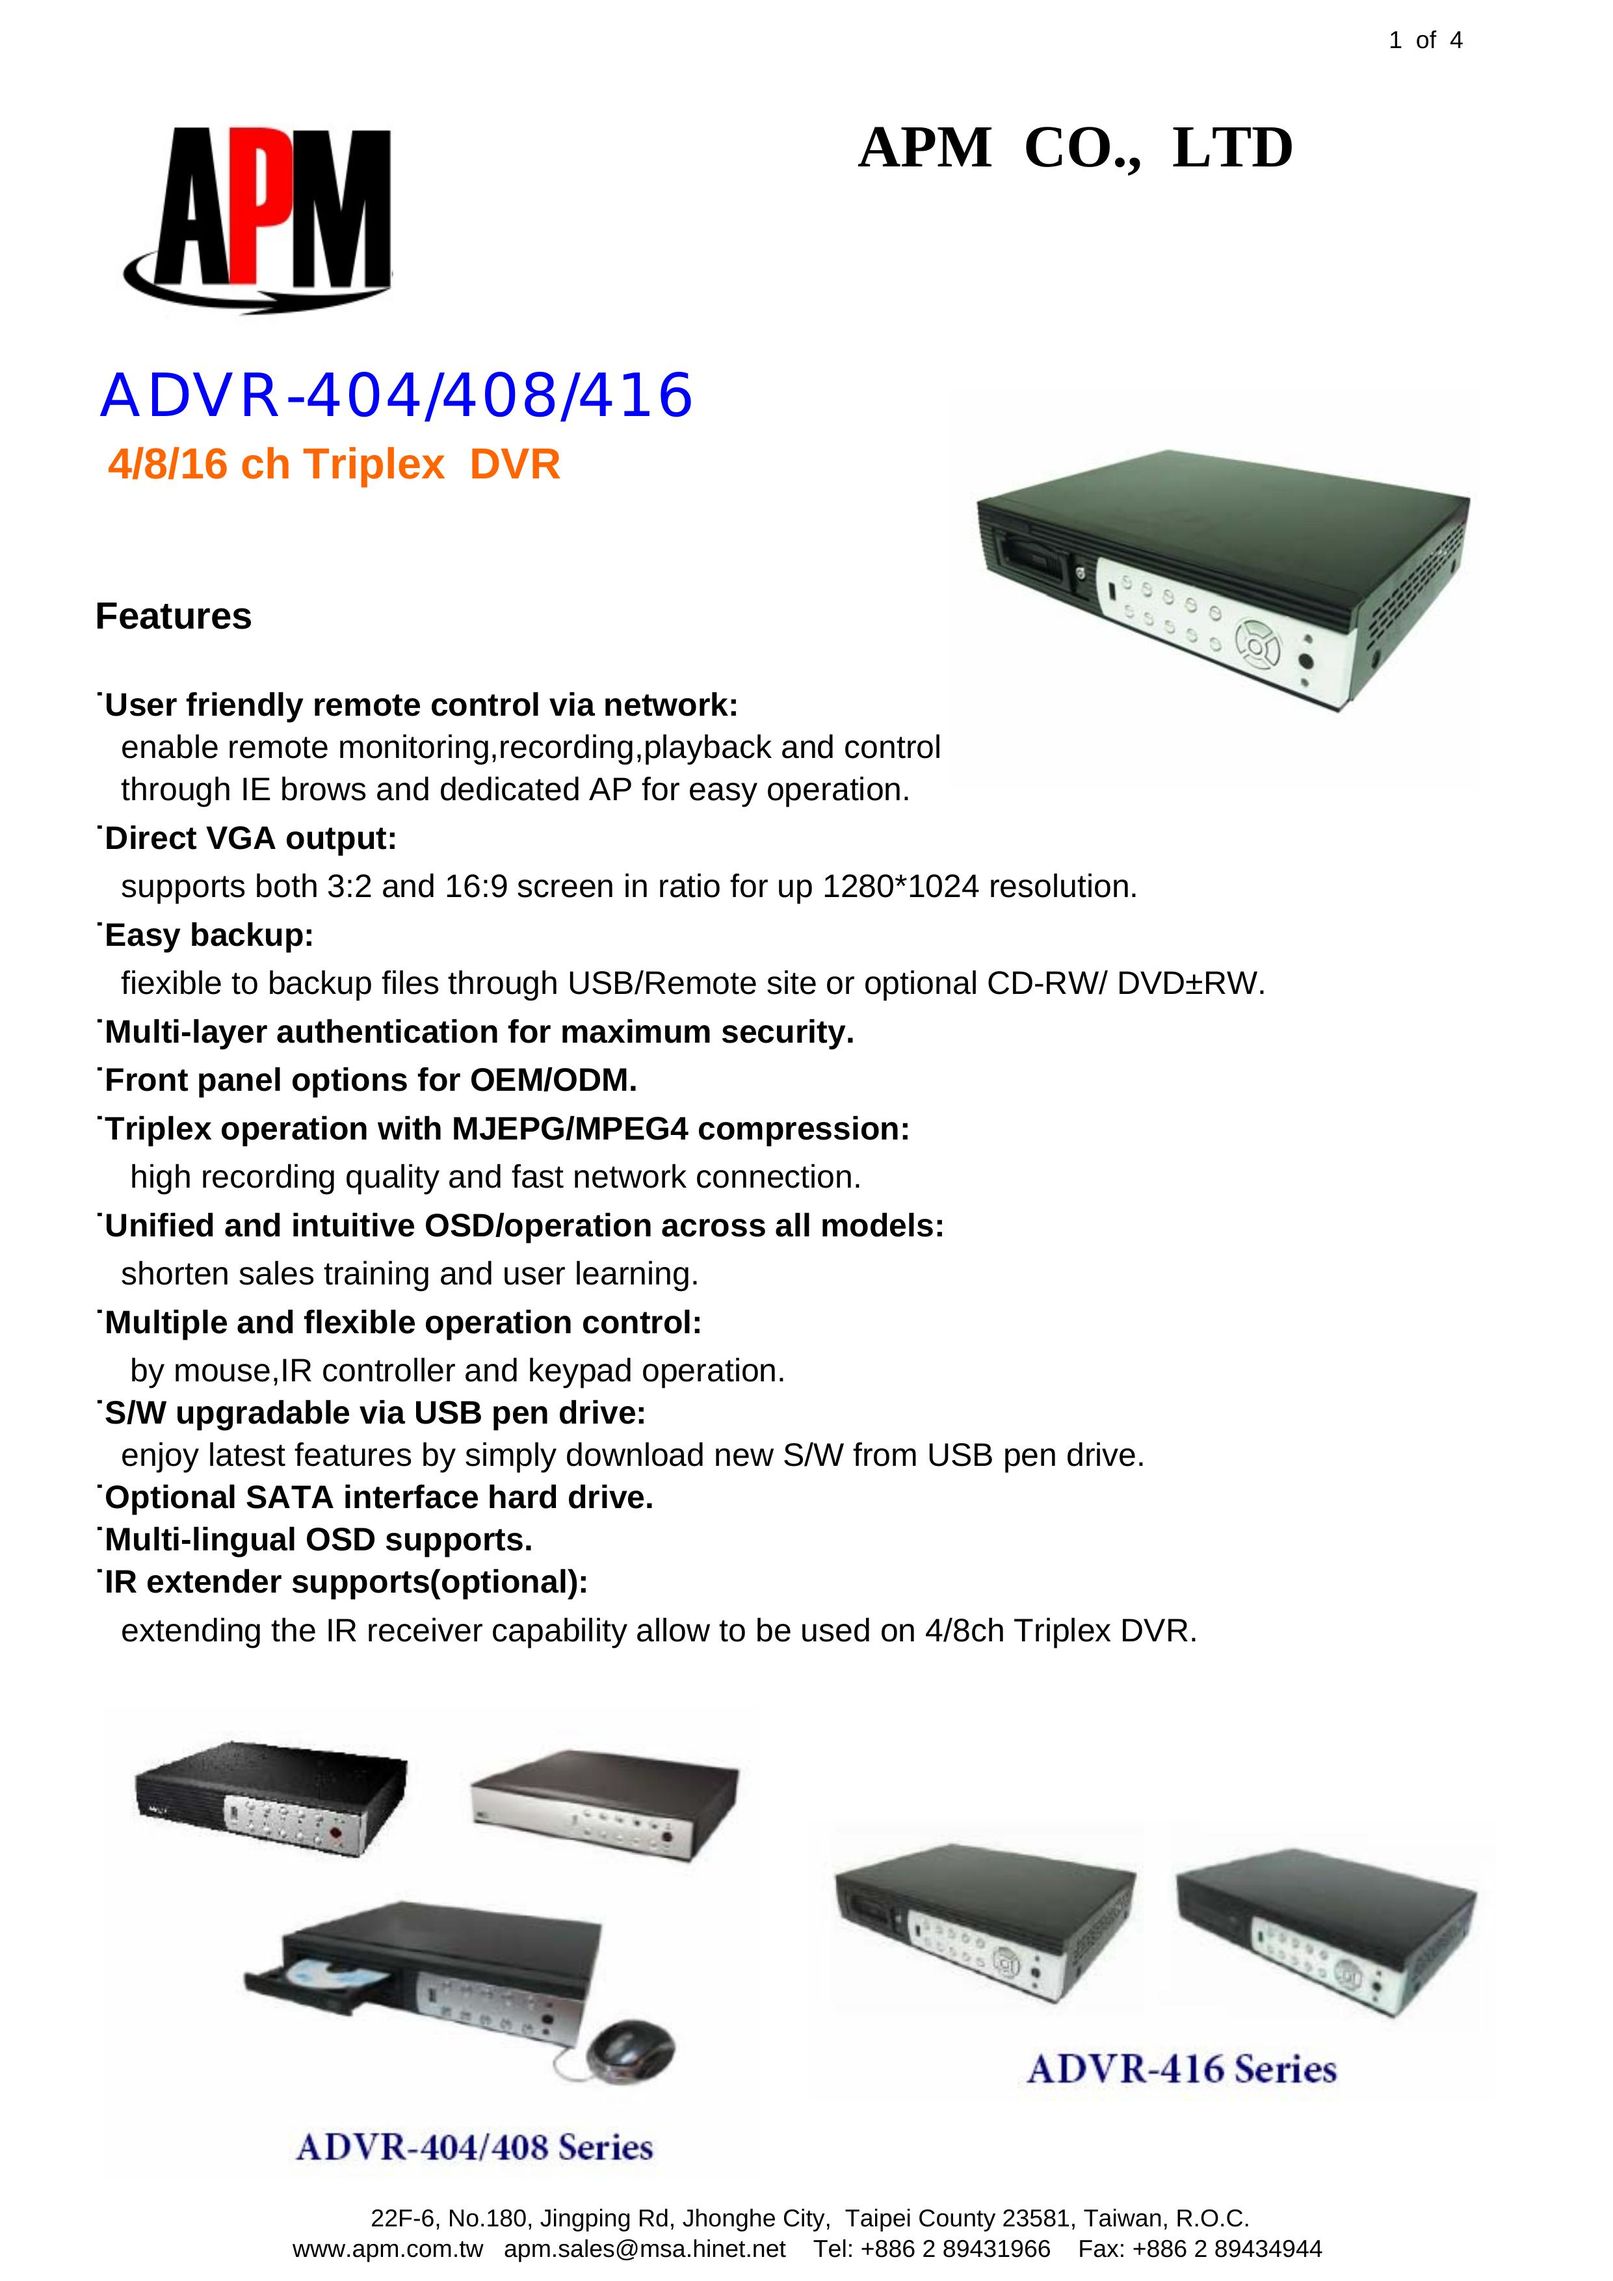 APM ADVR-408 DVR User Manual